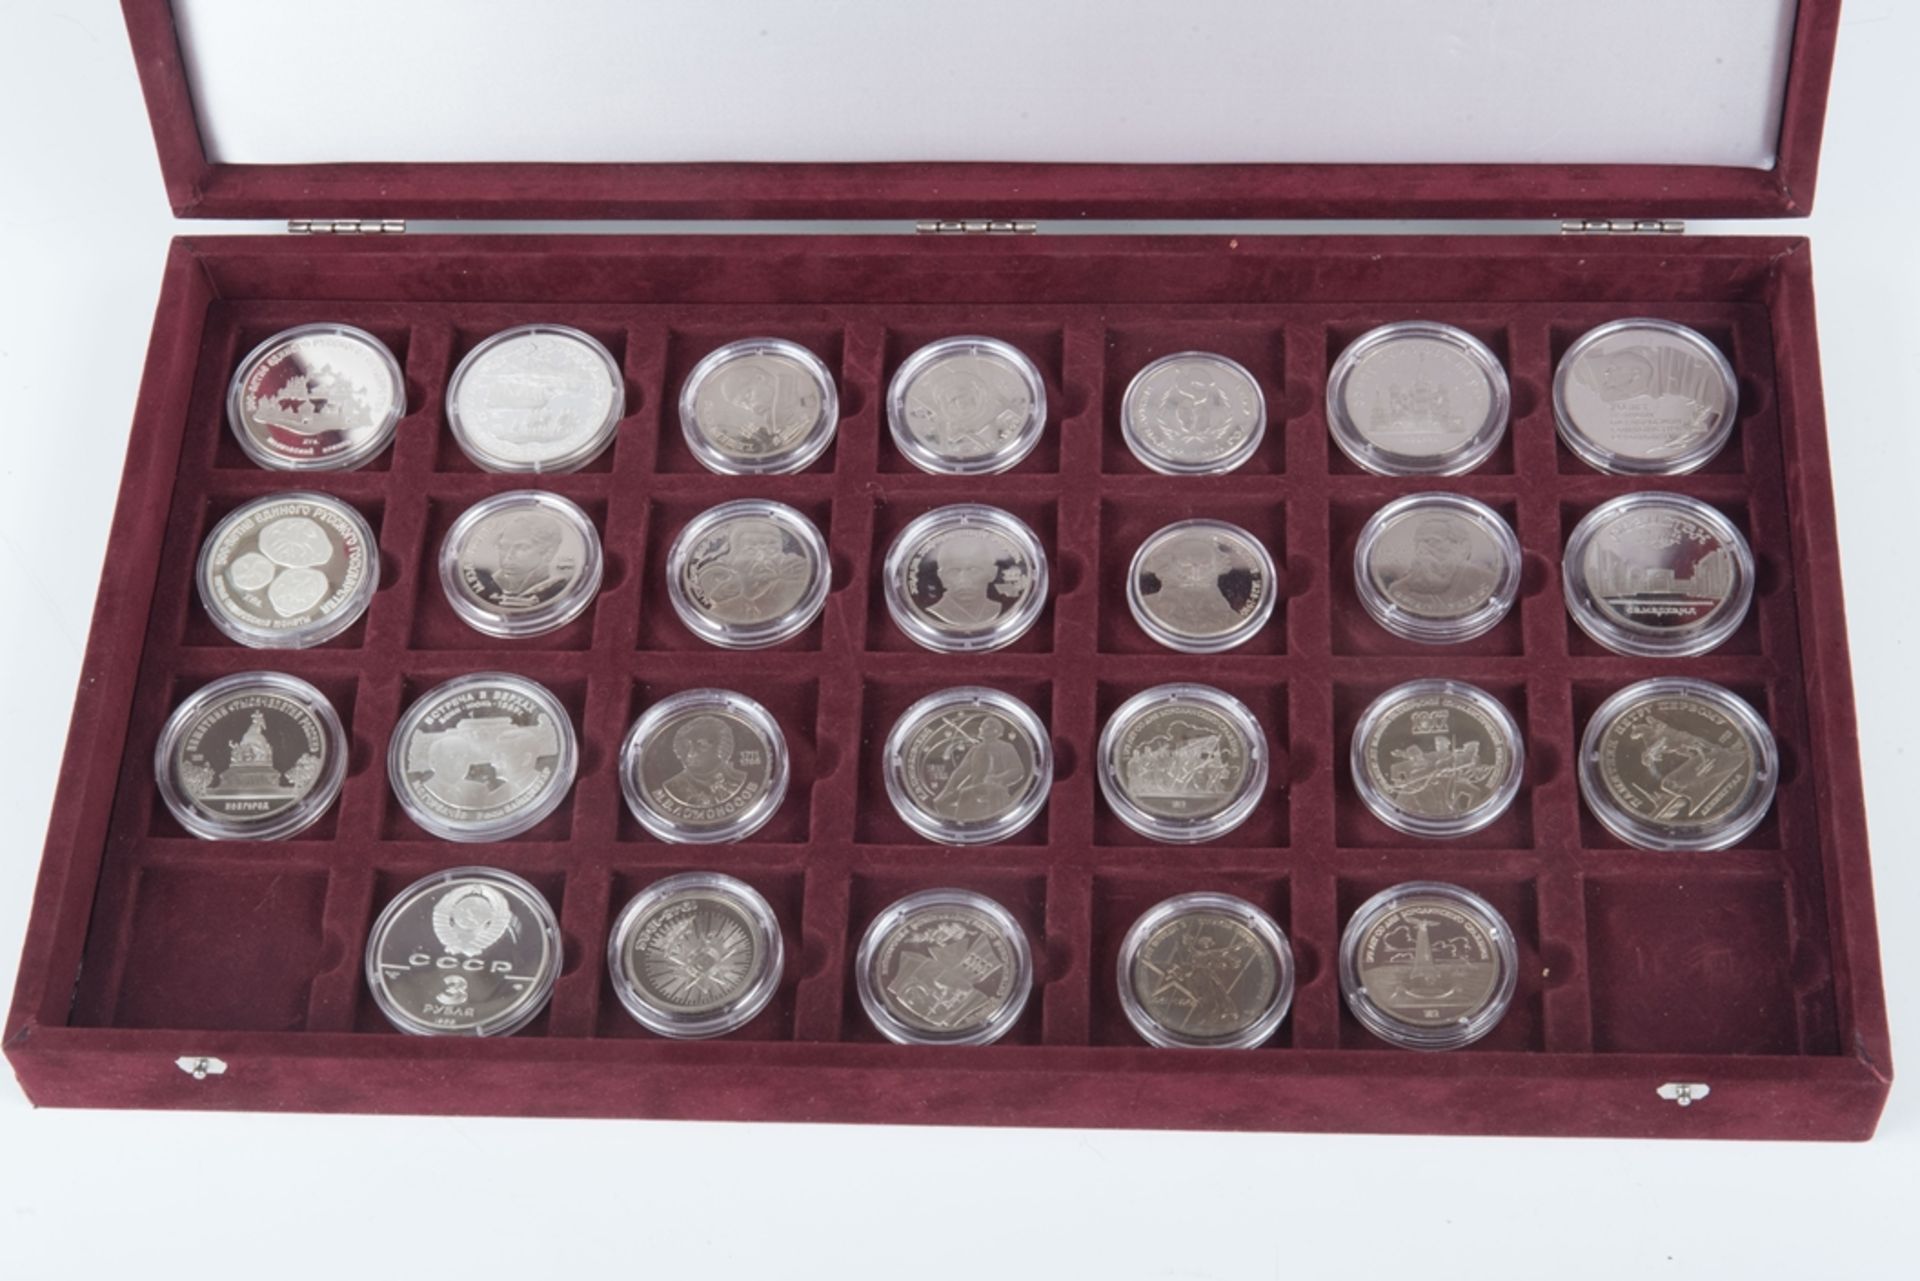 26 Gedenkmünzen 1000 Jahre Rußlandin einem Sammelkasten.